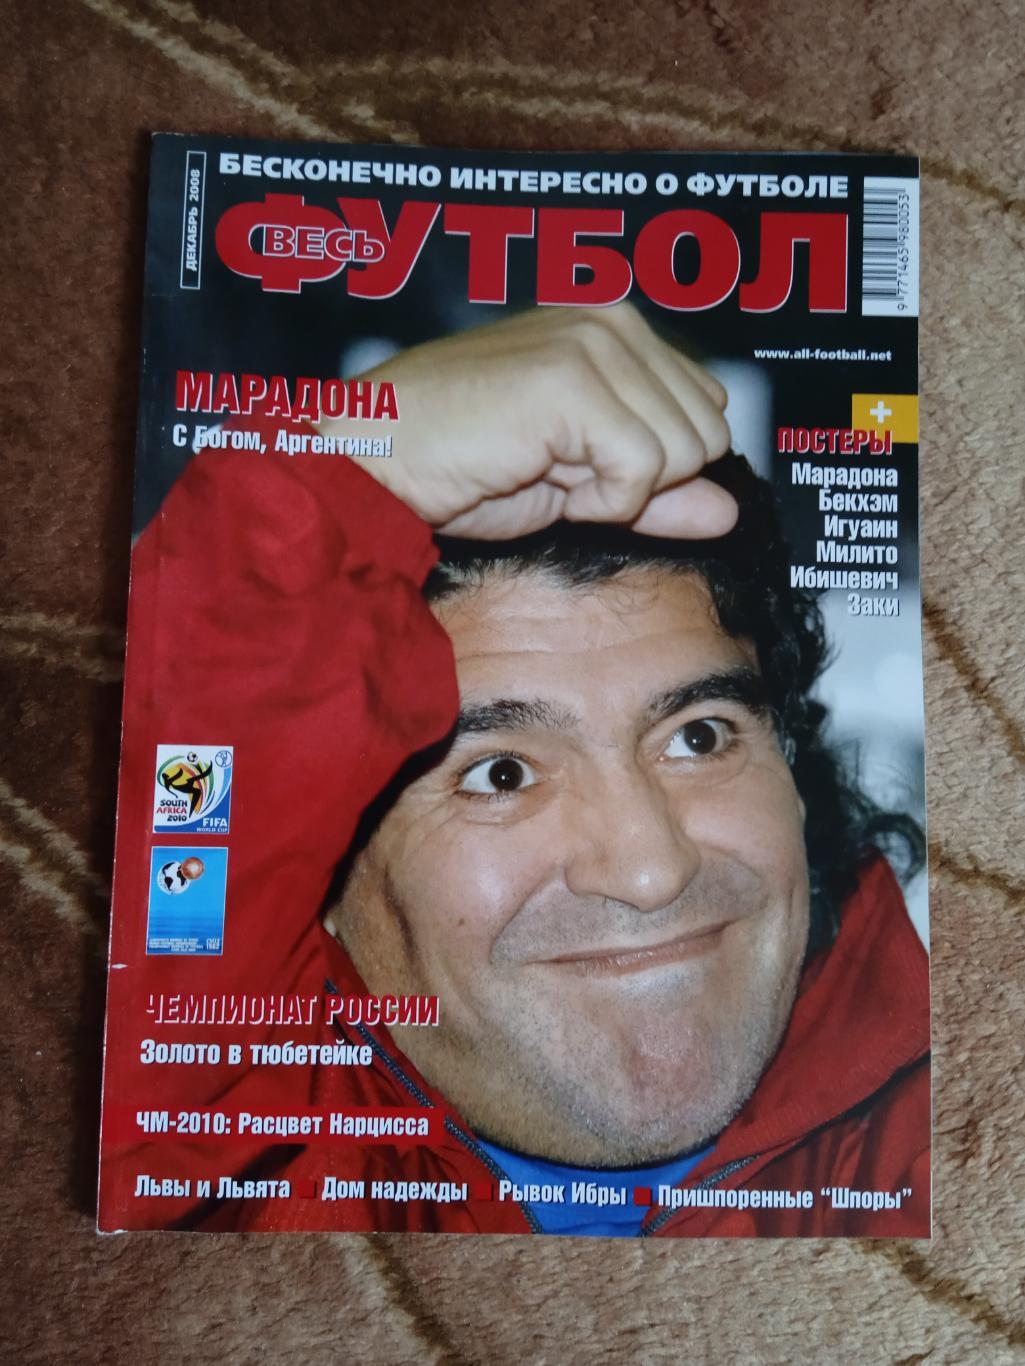 Журнал.Весь футбол.Декабрь 2008. (Постеры).